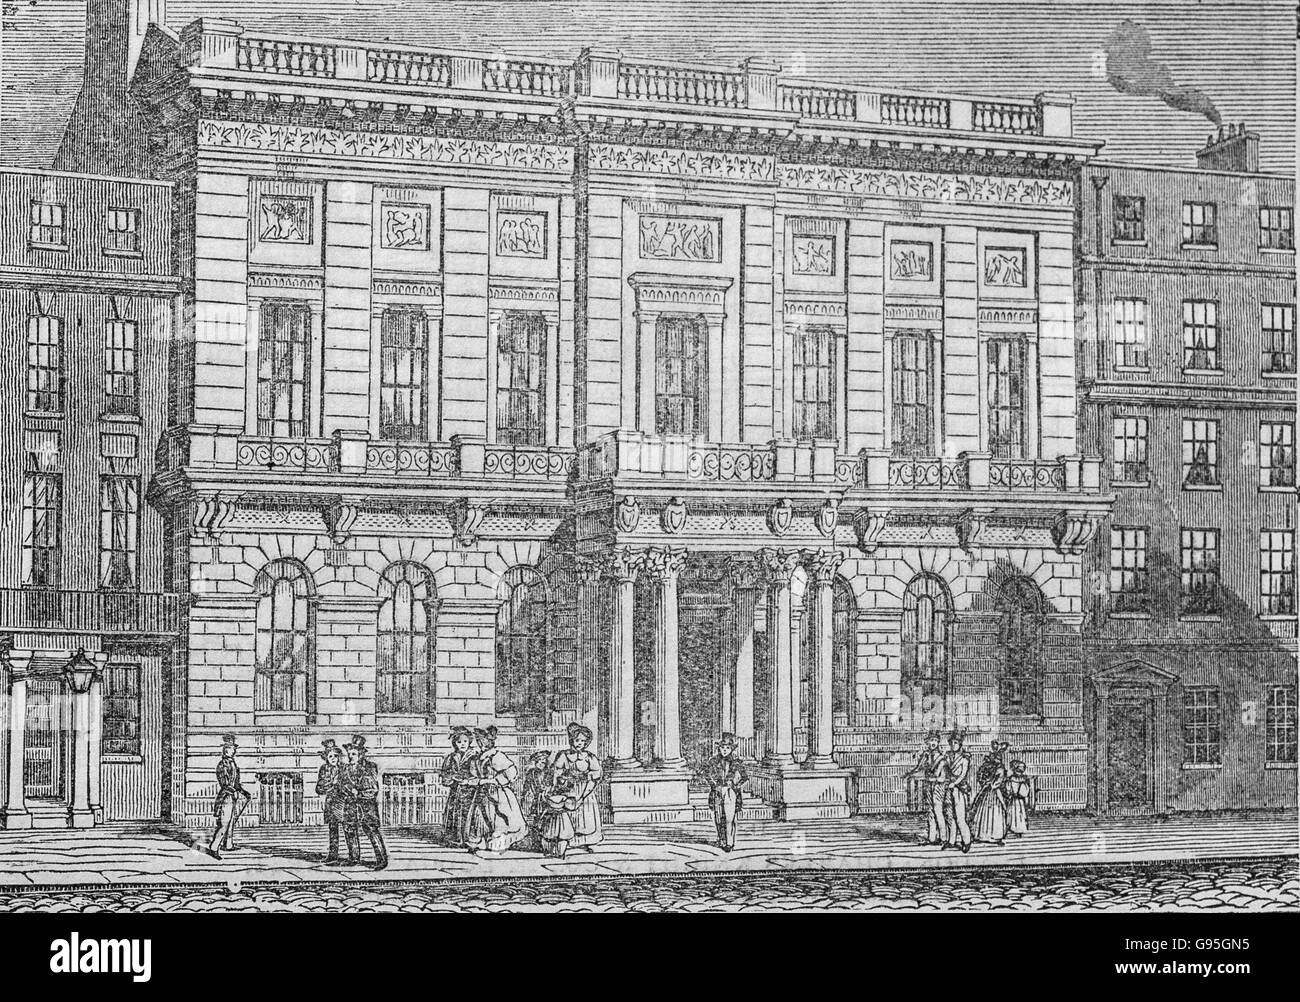 Oxford et Cambridge University Club House, à partir d'une gravure du milieu du xixe siècle. Maintenant connue sous le nom de club d'Oxford et Cambridge, un cub à 71 Pall Mall, Londres. Banque D'Images